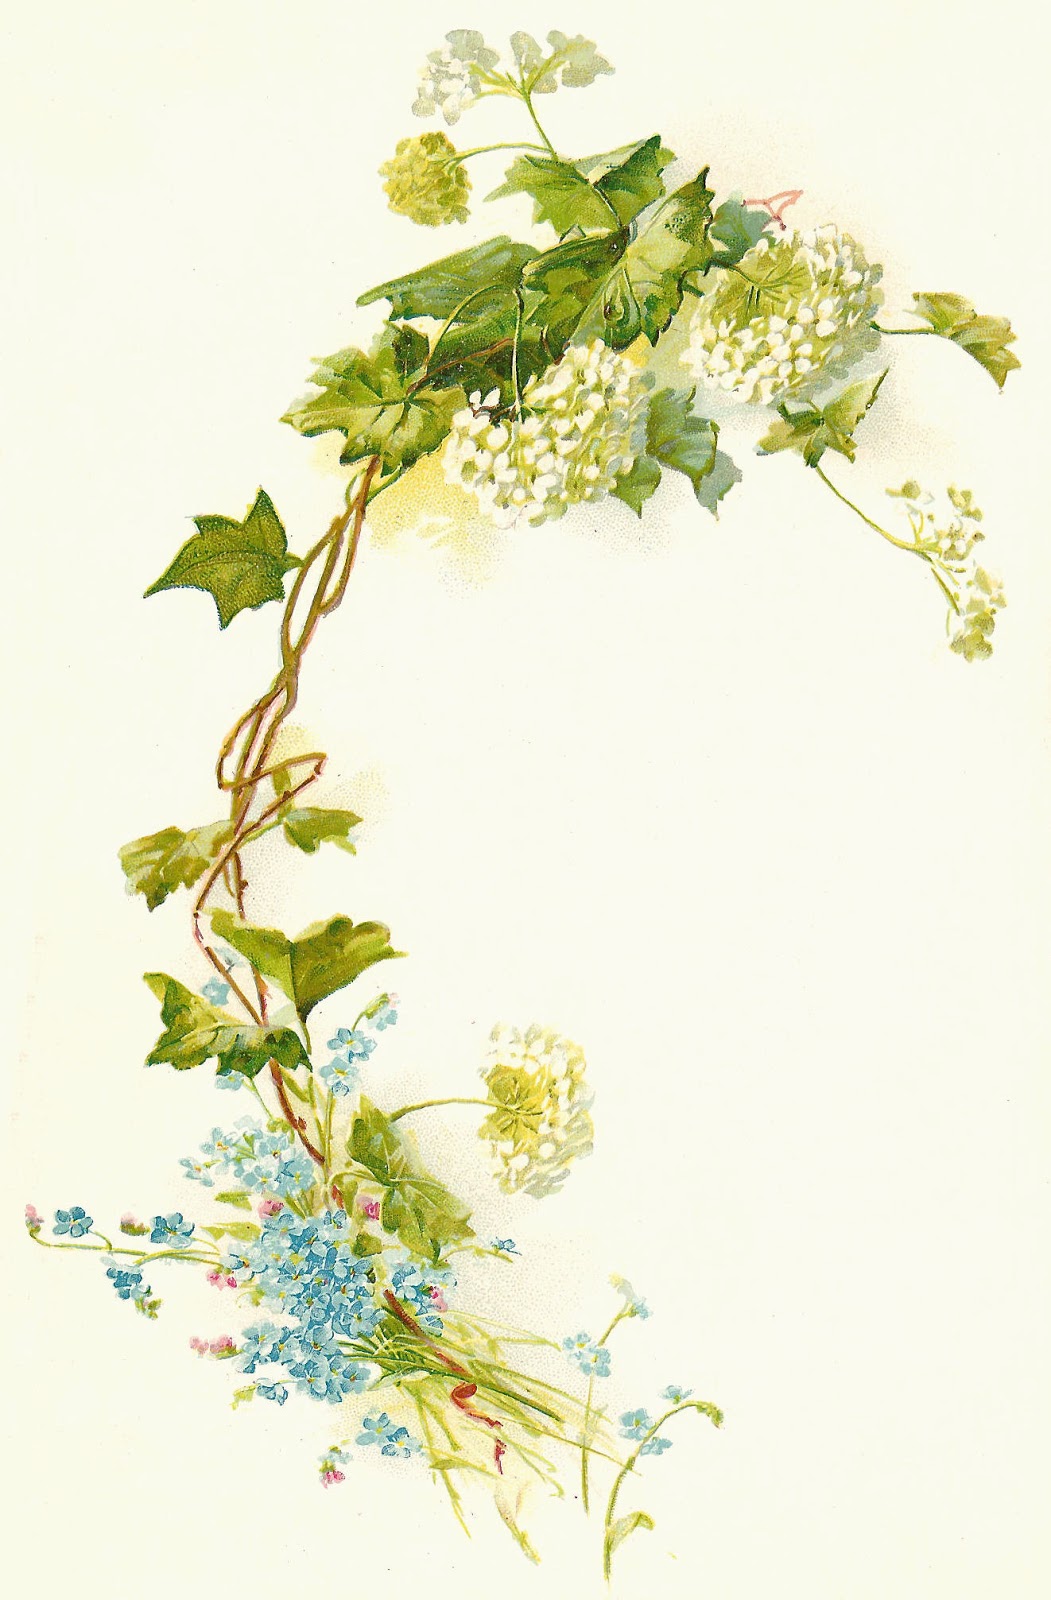 Antique Images  Free Flower Clip Art  Vintage Flower Illustration With